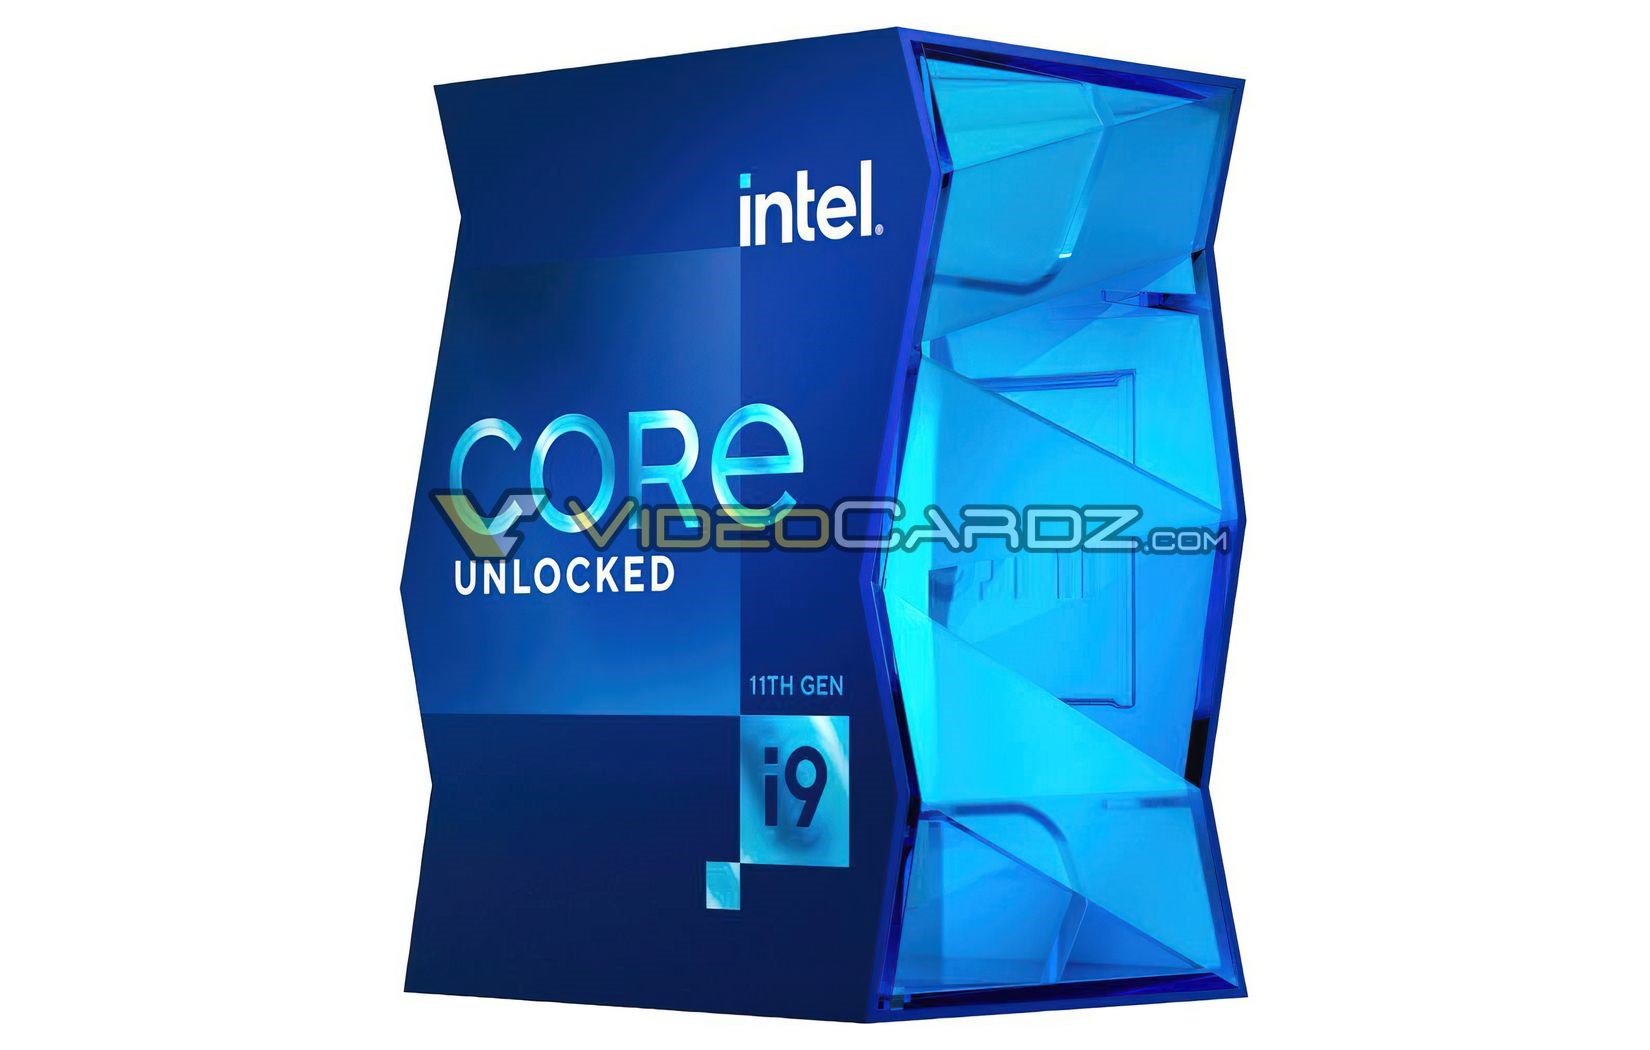 Intel Rocket Lake Core i9 işlemcilerin kutu tasarımları belli oldu